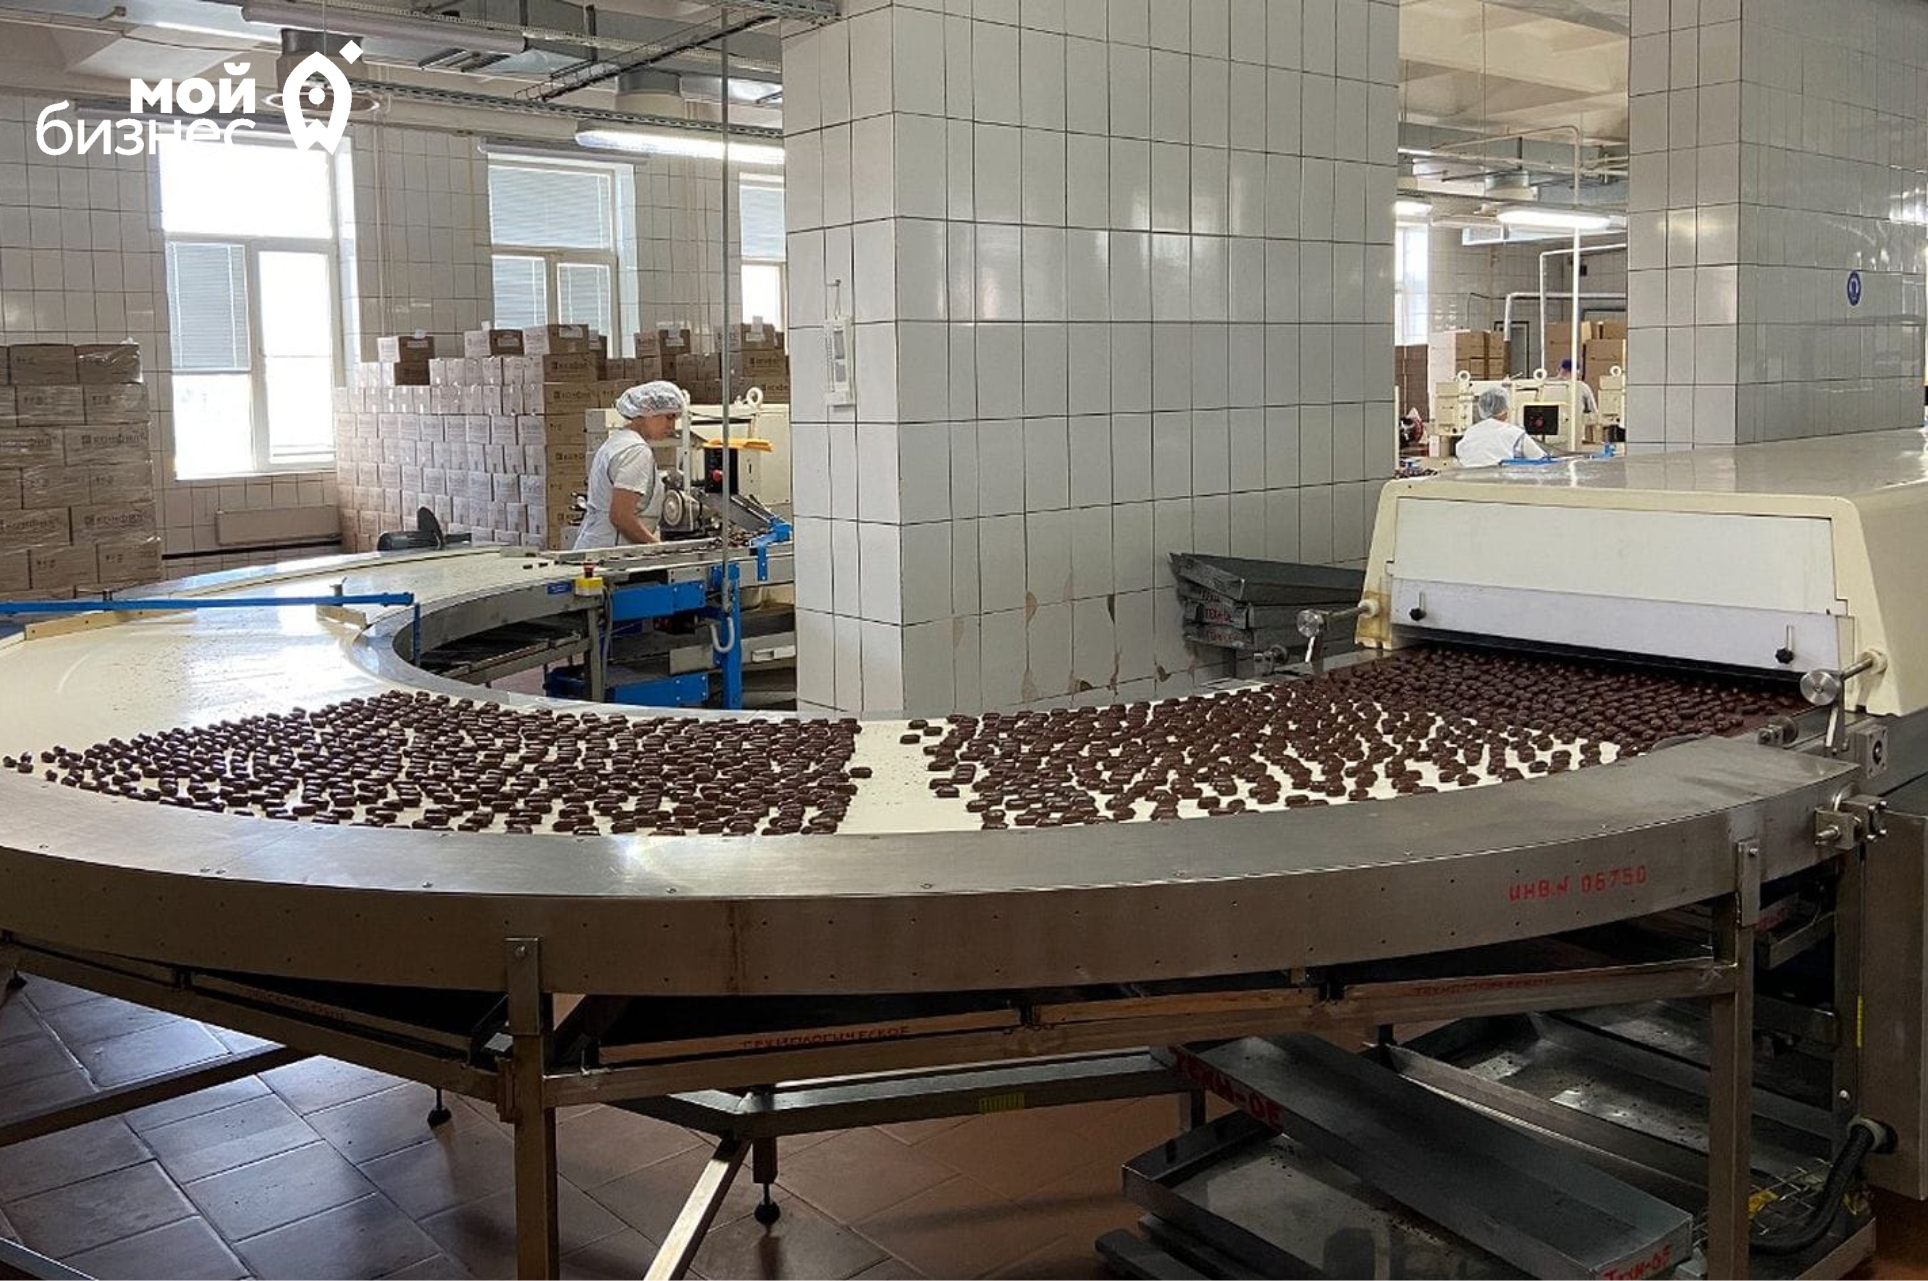 Волгоградская кондитерская фабрика снизила затраты времени на перемещение продукции на 70%